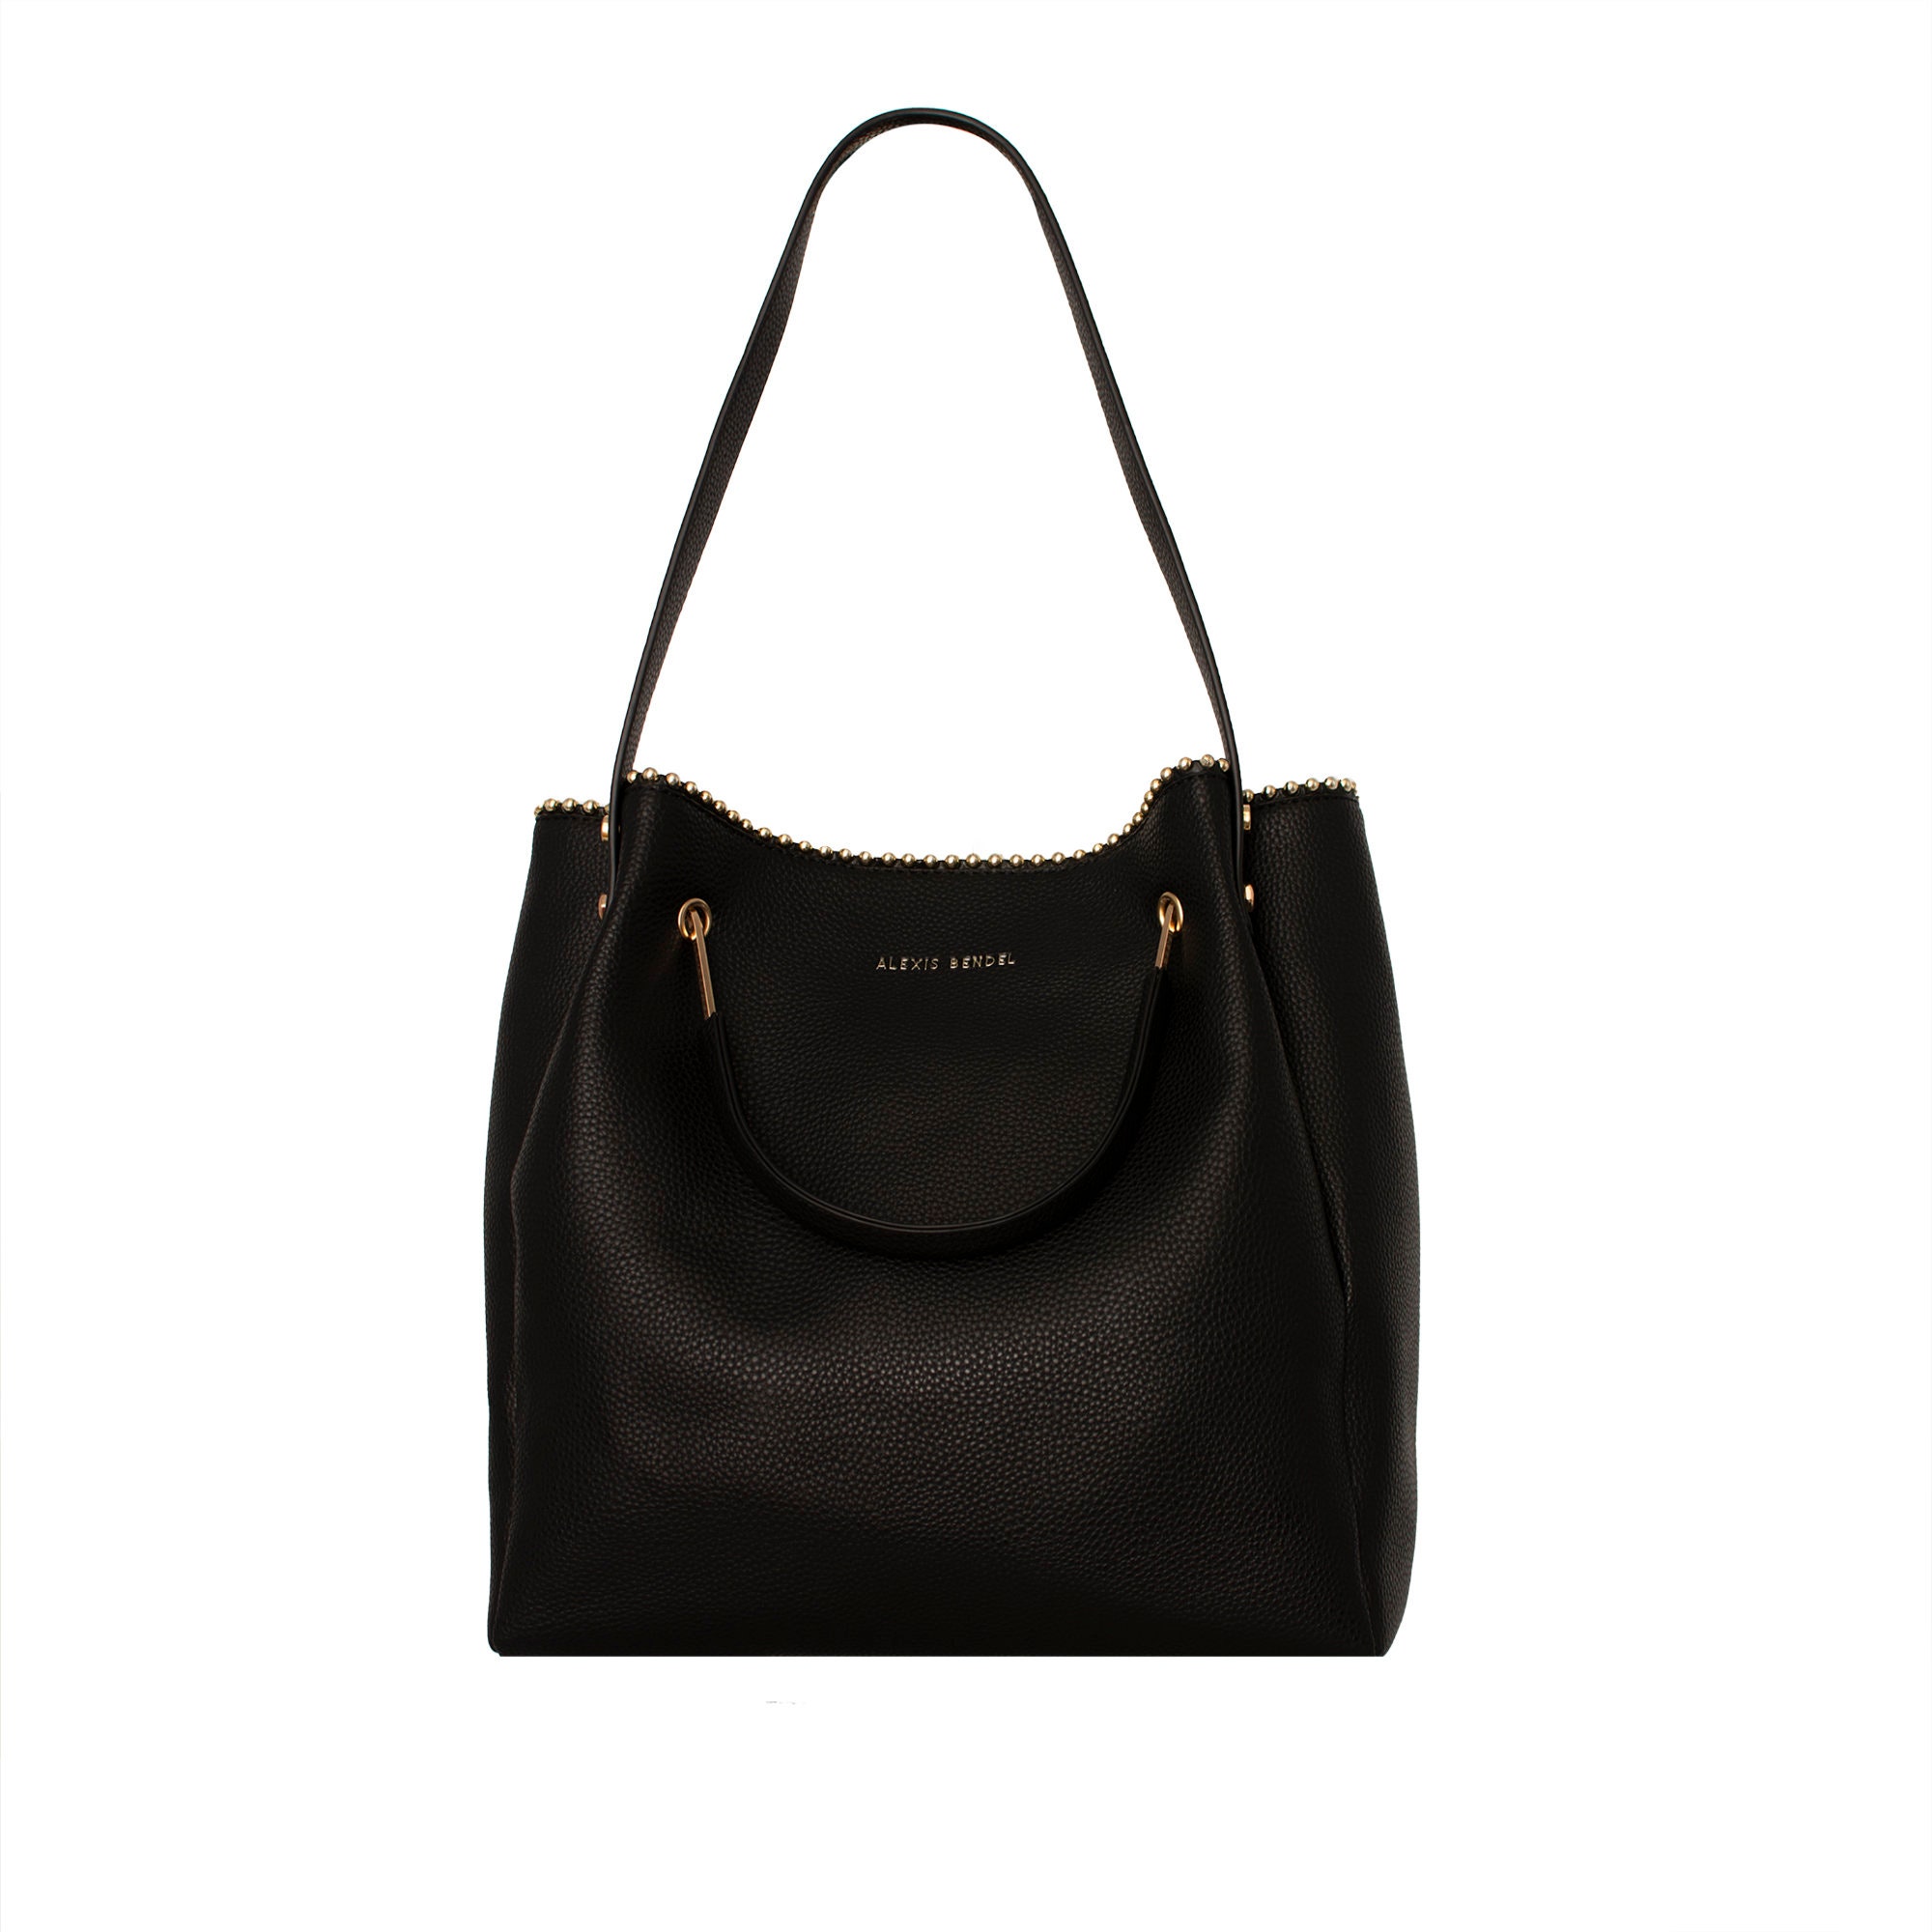 Alexis Bendel Elise Satchel Handbag in Black